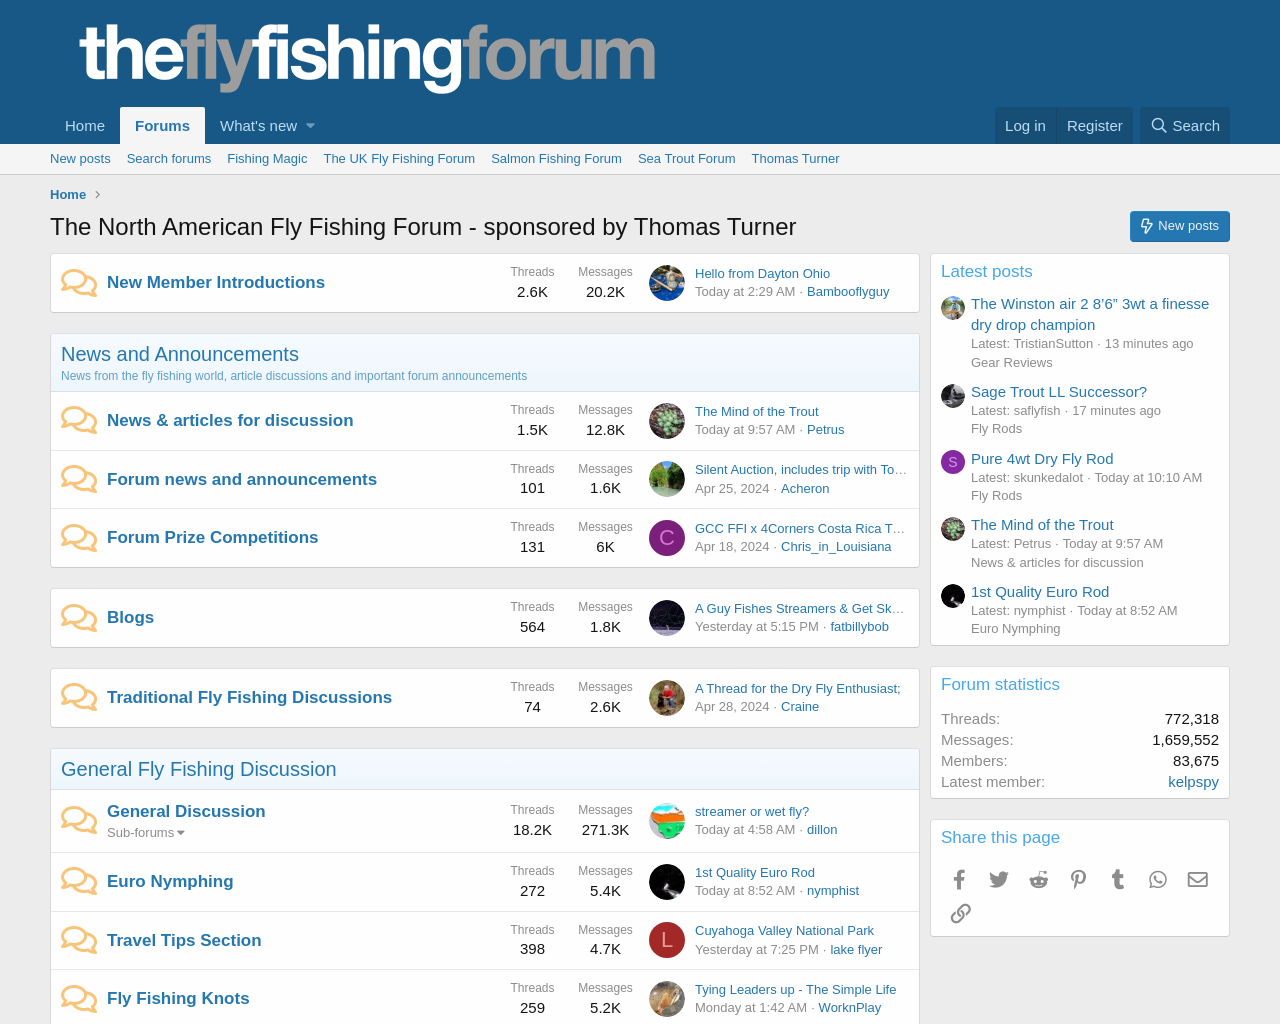 theflyfishingforum.com